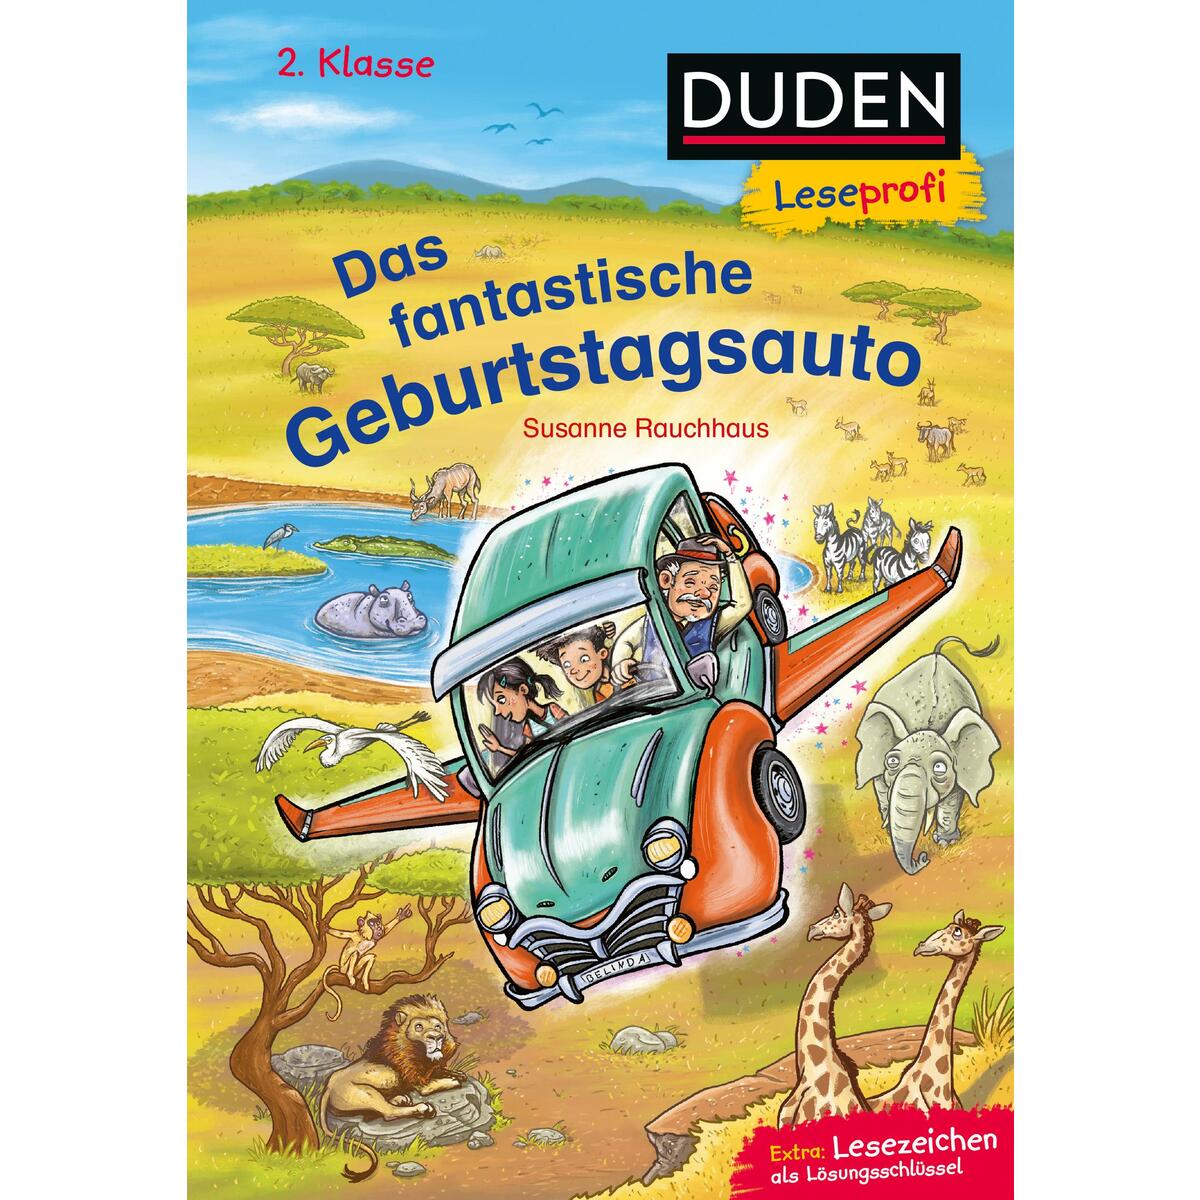 Duden Leseprofi - Das fantastische Geburtstagsauto, 2. Klasse von FISCHER Sauerländer Duden